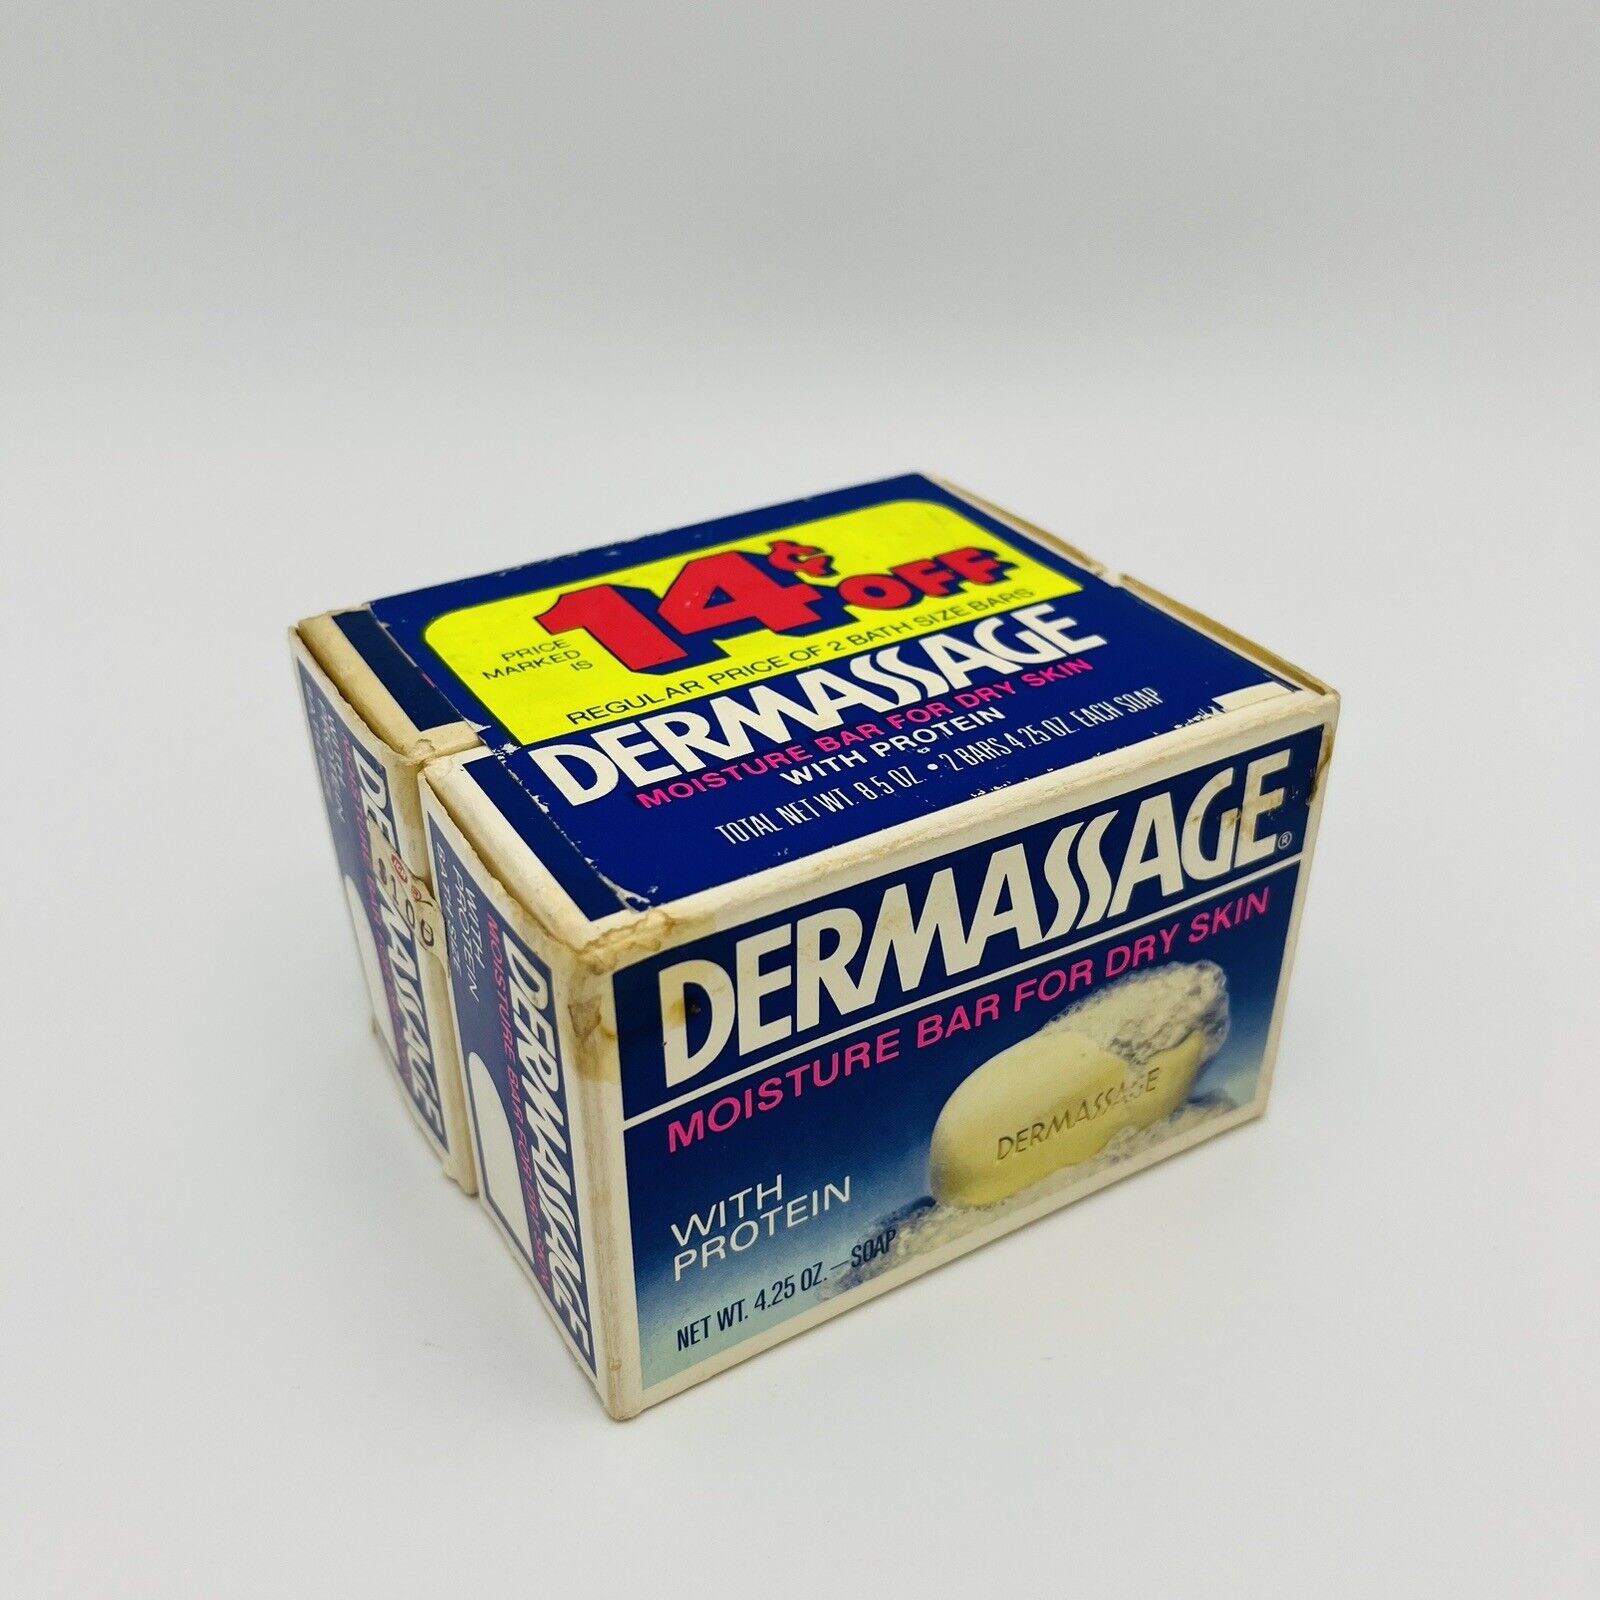 Colgate DERMASSAGE Moisture Bar Dry Skin Soap Movie Prop NOS 2 Pack Vintage